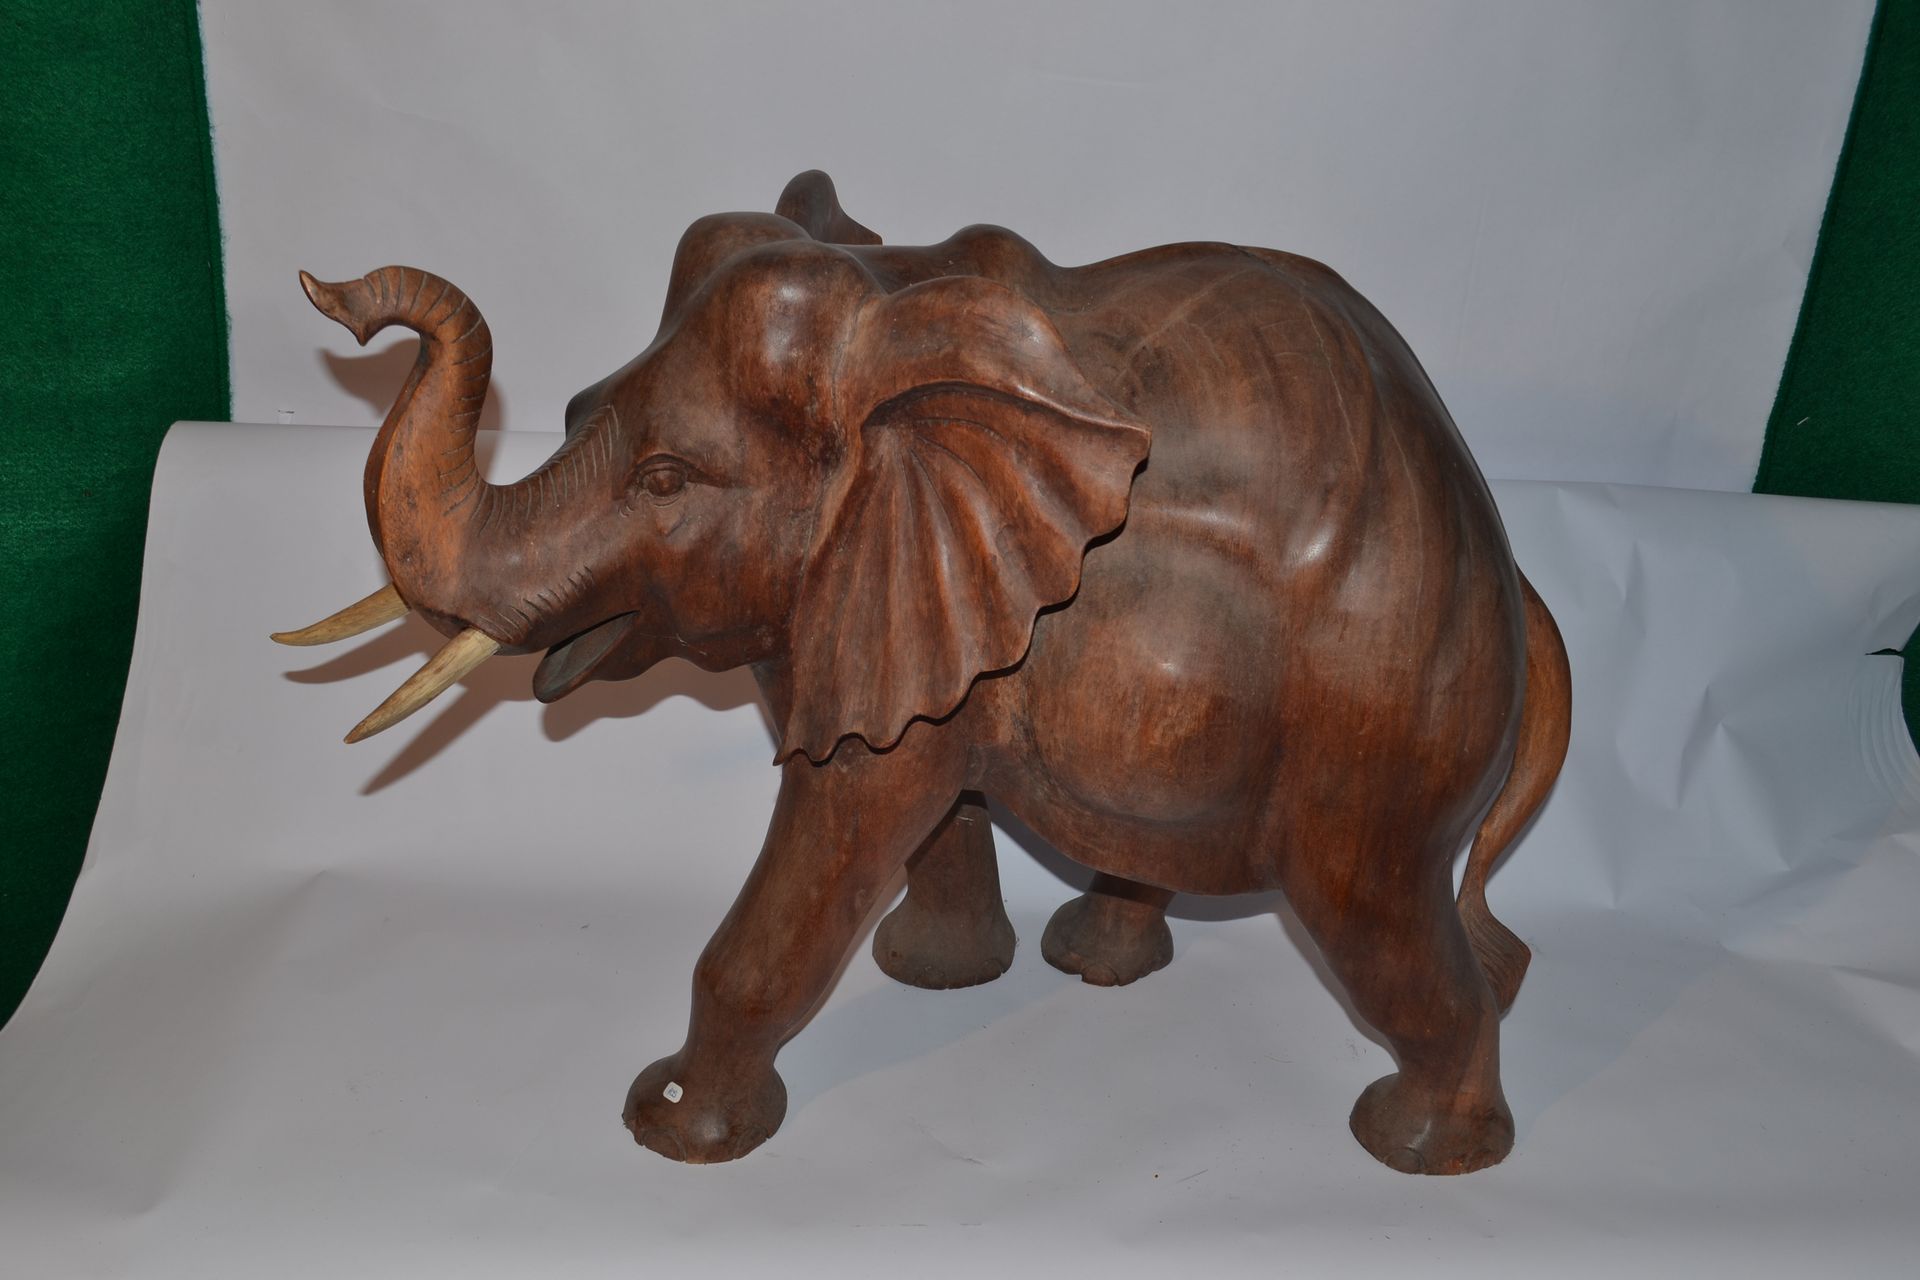 Null 雕刻的大象

苏木

50 x 70 x 38厘米

重量：18公斤。